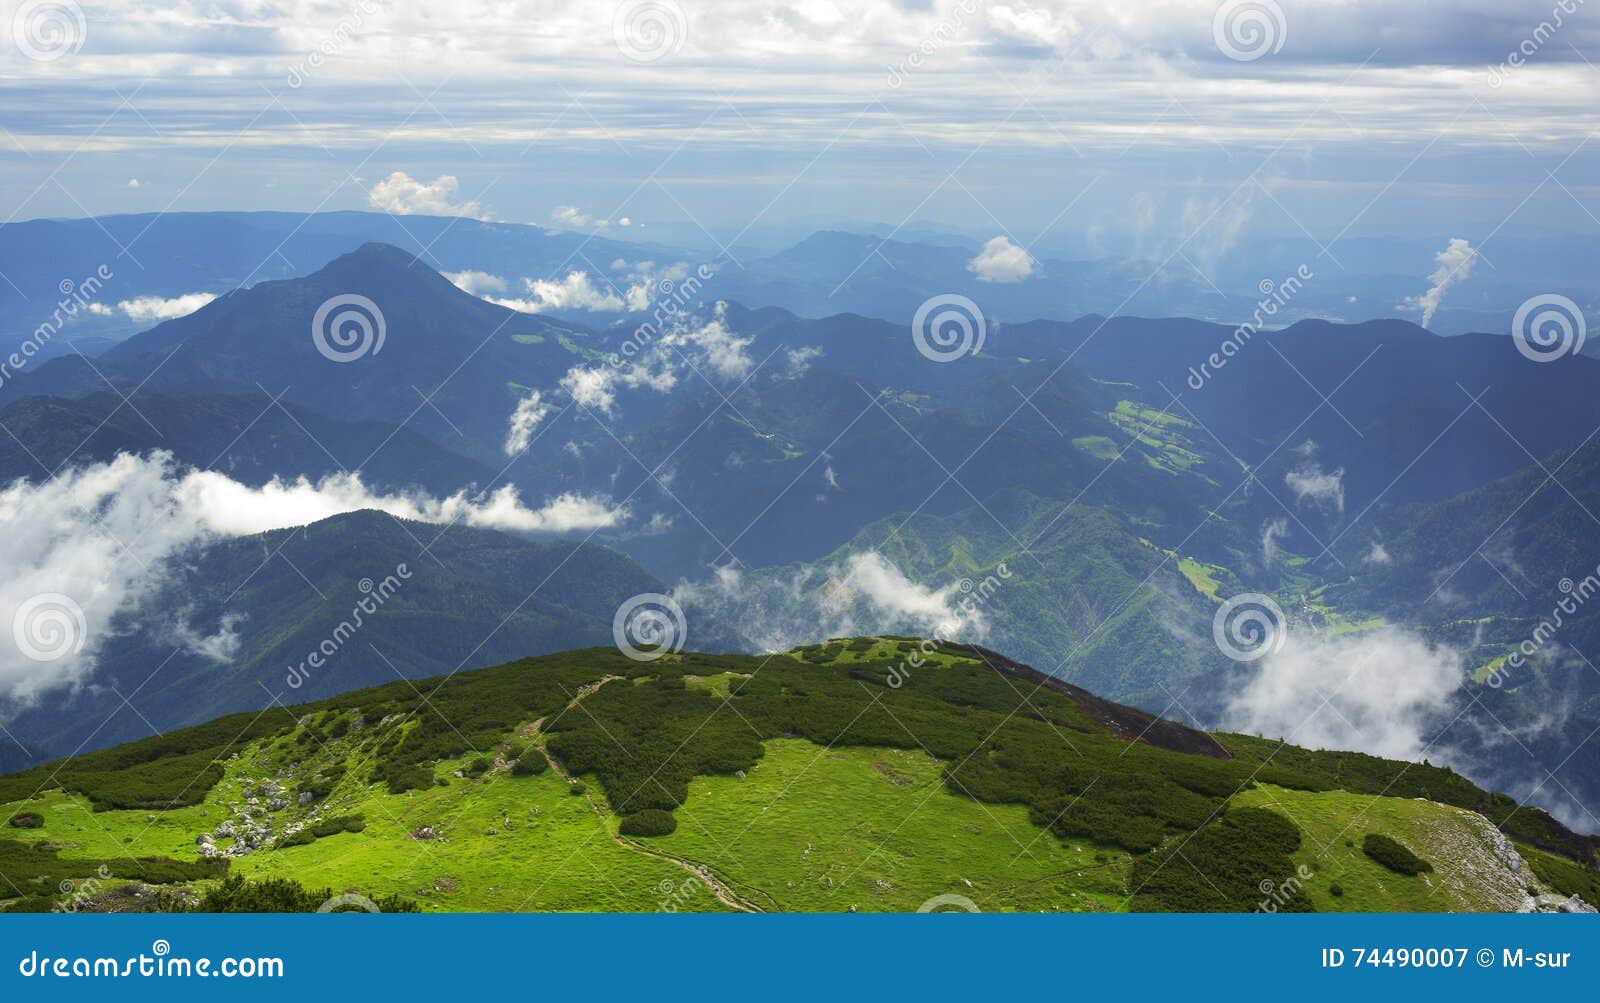 mountains in slovenia